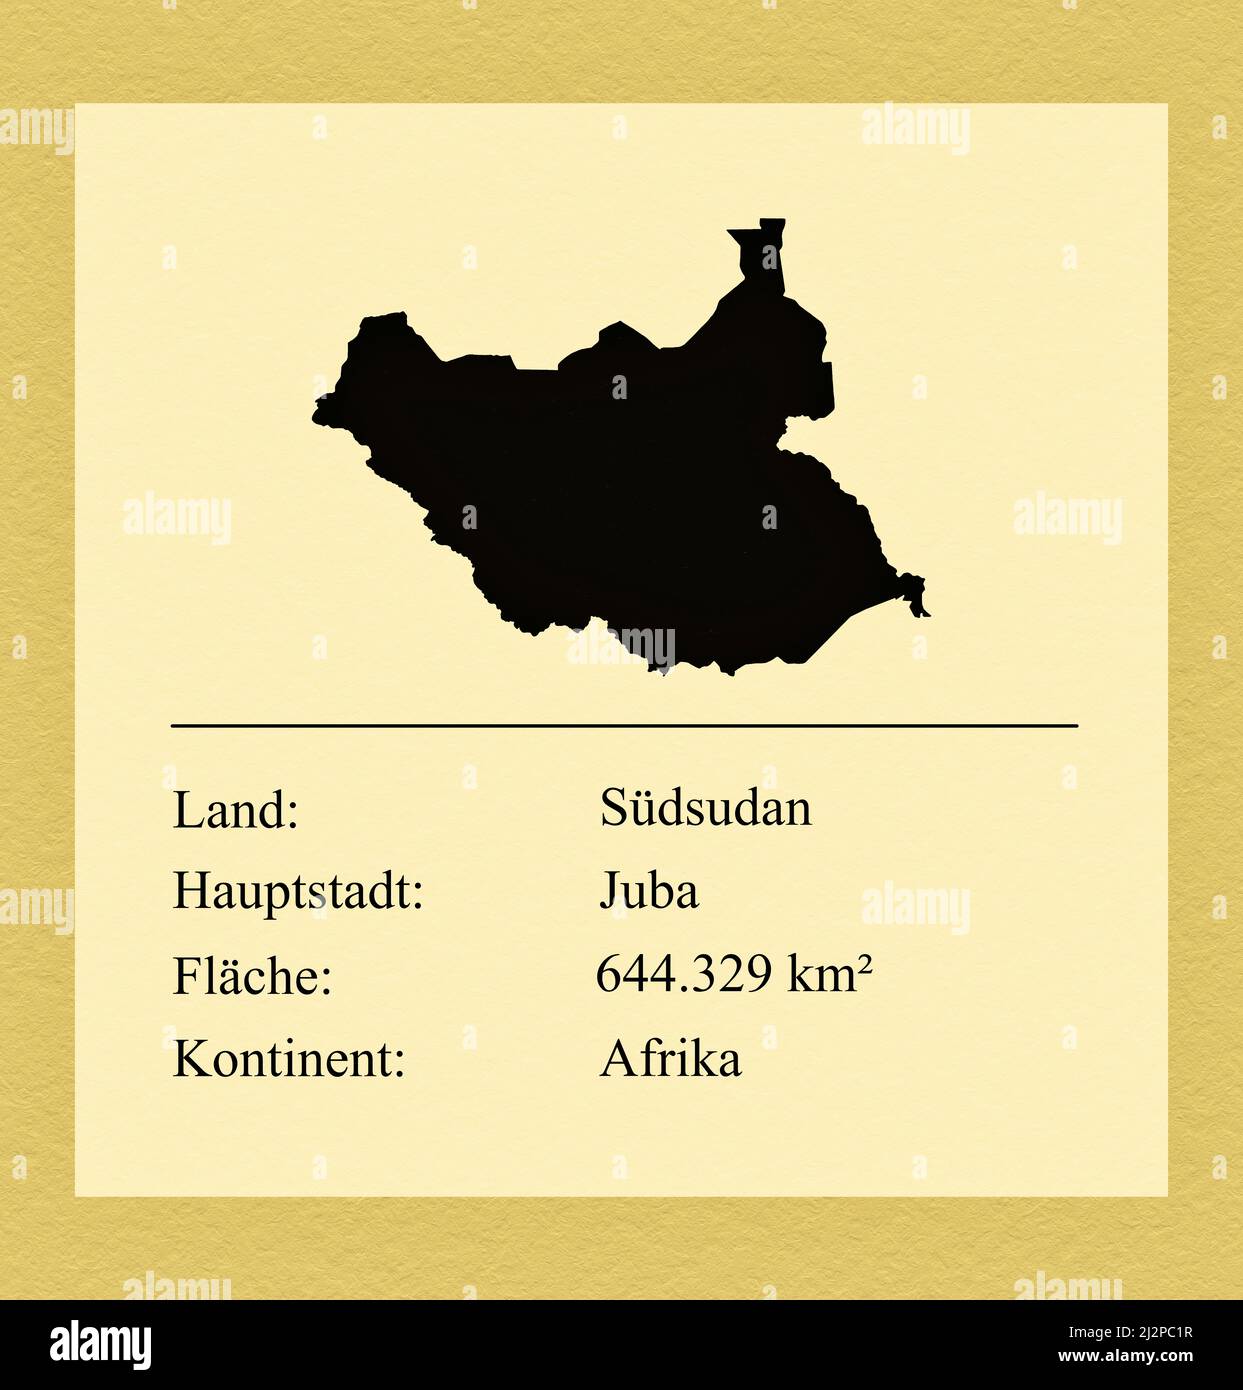 Umrisse des Landes Südsudan, darunter ein kleiner Steckbrief mit Ländernamen, Hauptstadt, Fläche und Kontinent Stock Photo